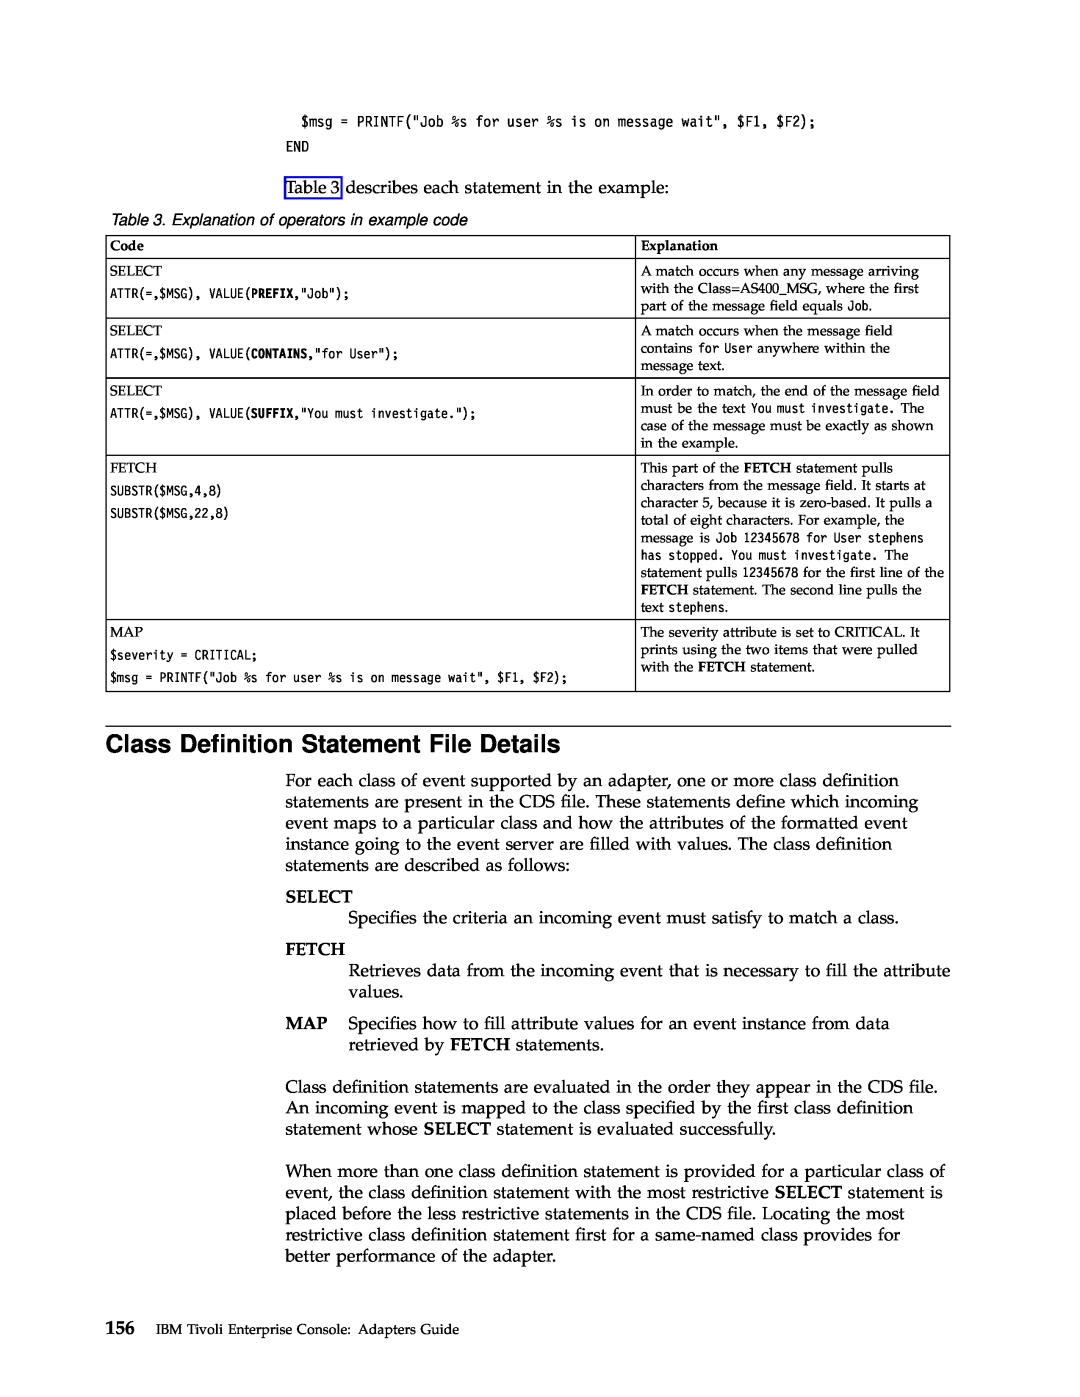 IBM Enterprise Console manual Class Definition Statement File Details, Select, Fetch 